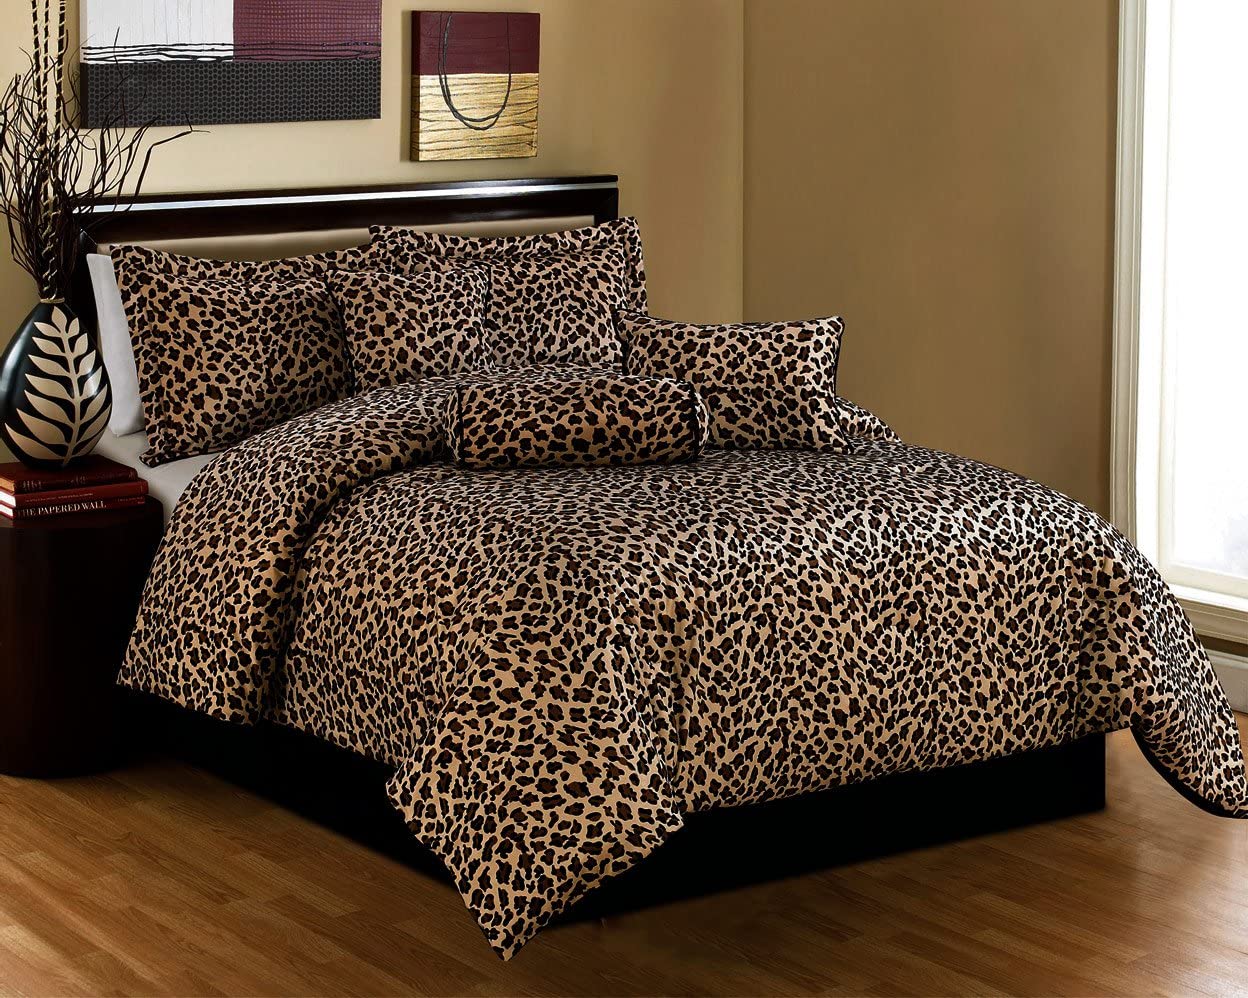 Queen Size Bedding Set Leopard Print WholeSale - Price List, Bulk